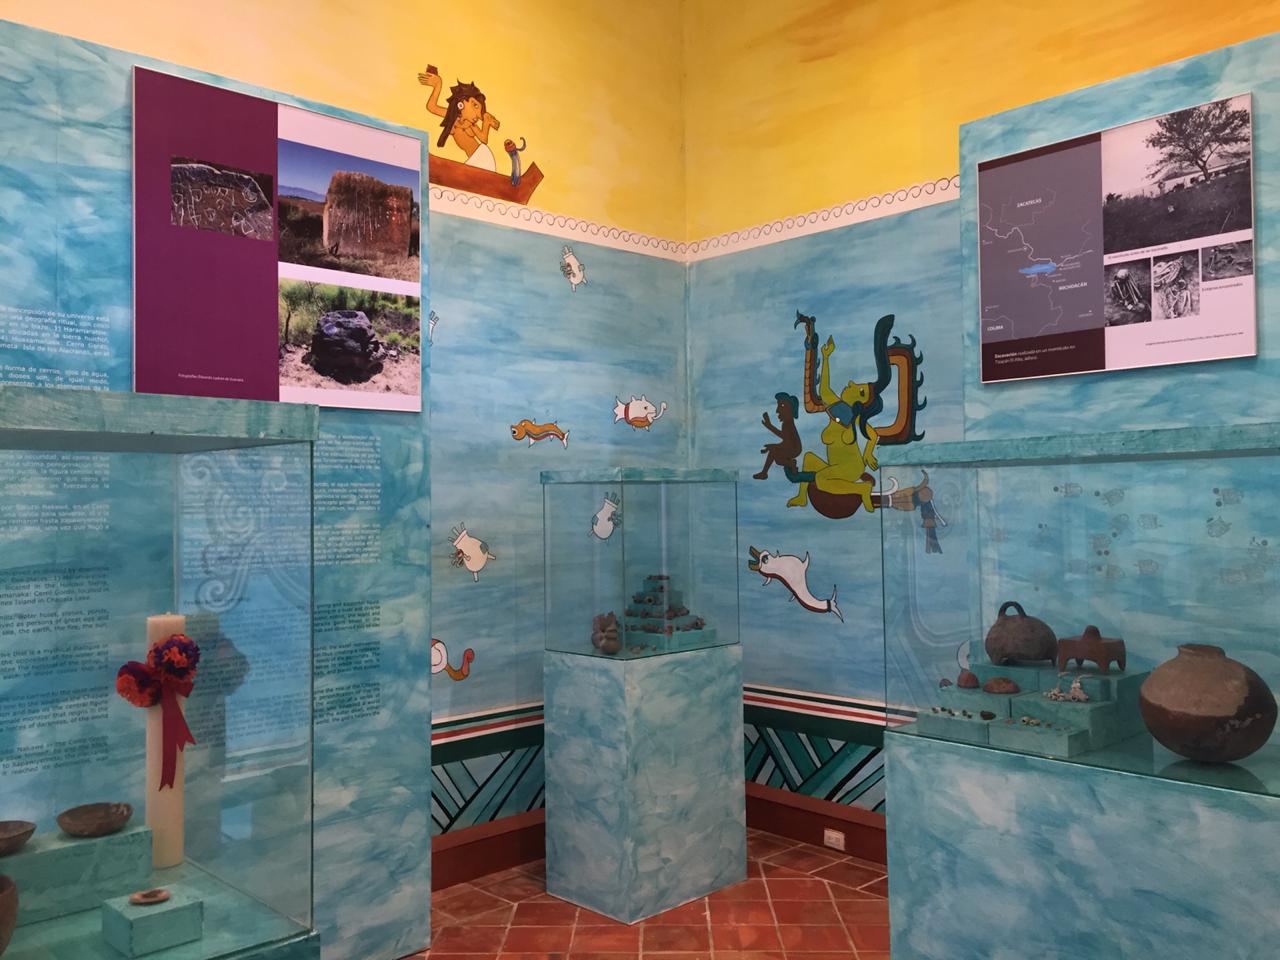 Acervo. La exposición de apertura cuenta con un total de 175 piezas miniatura fabricadas desde la época prehispánica hasta la época colonial. (Fotos: Cortesía)